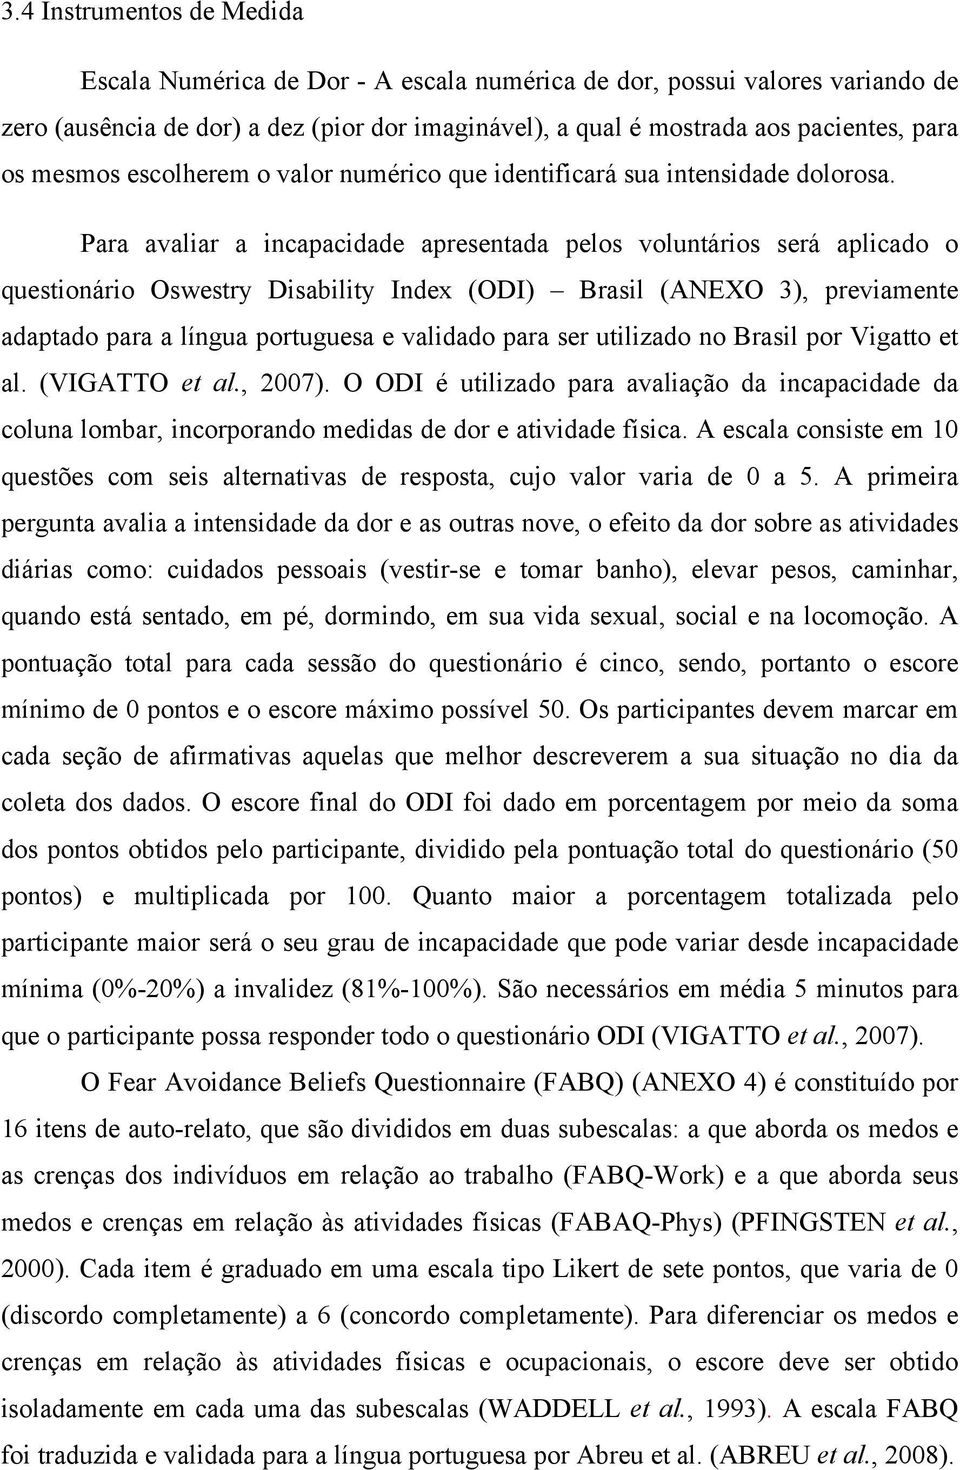 Para avaliar a incapacidade apresentada pelos voluntários será aplicado o questionário Oswestry Disability Index (ODI) Brasil (ANEXO 3), previamente adaptado para a língua portuguesa e validado para